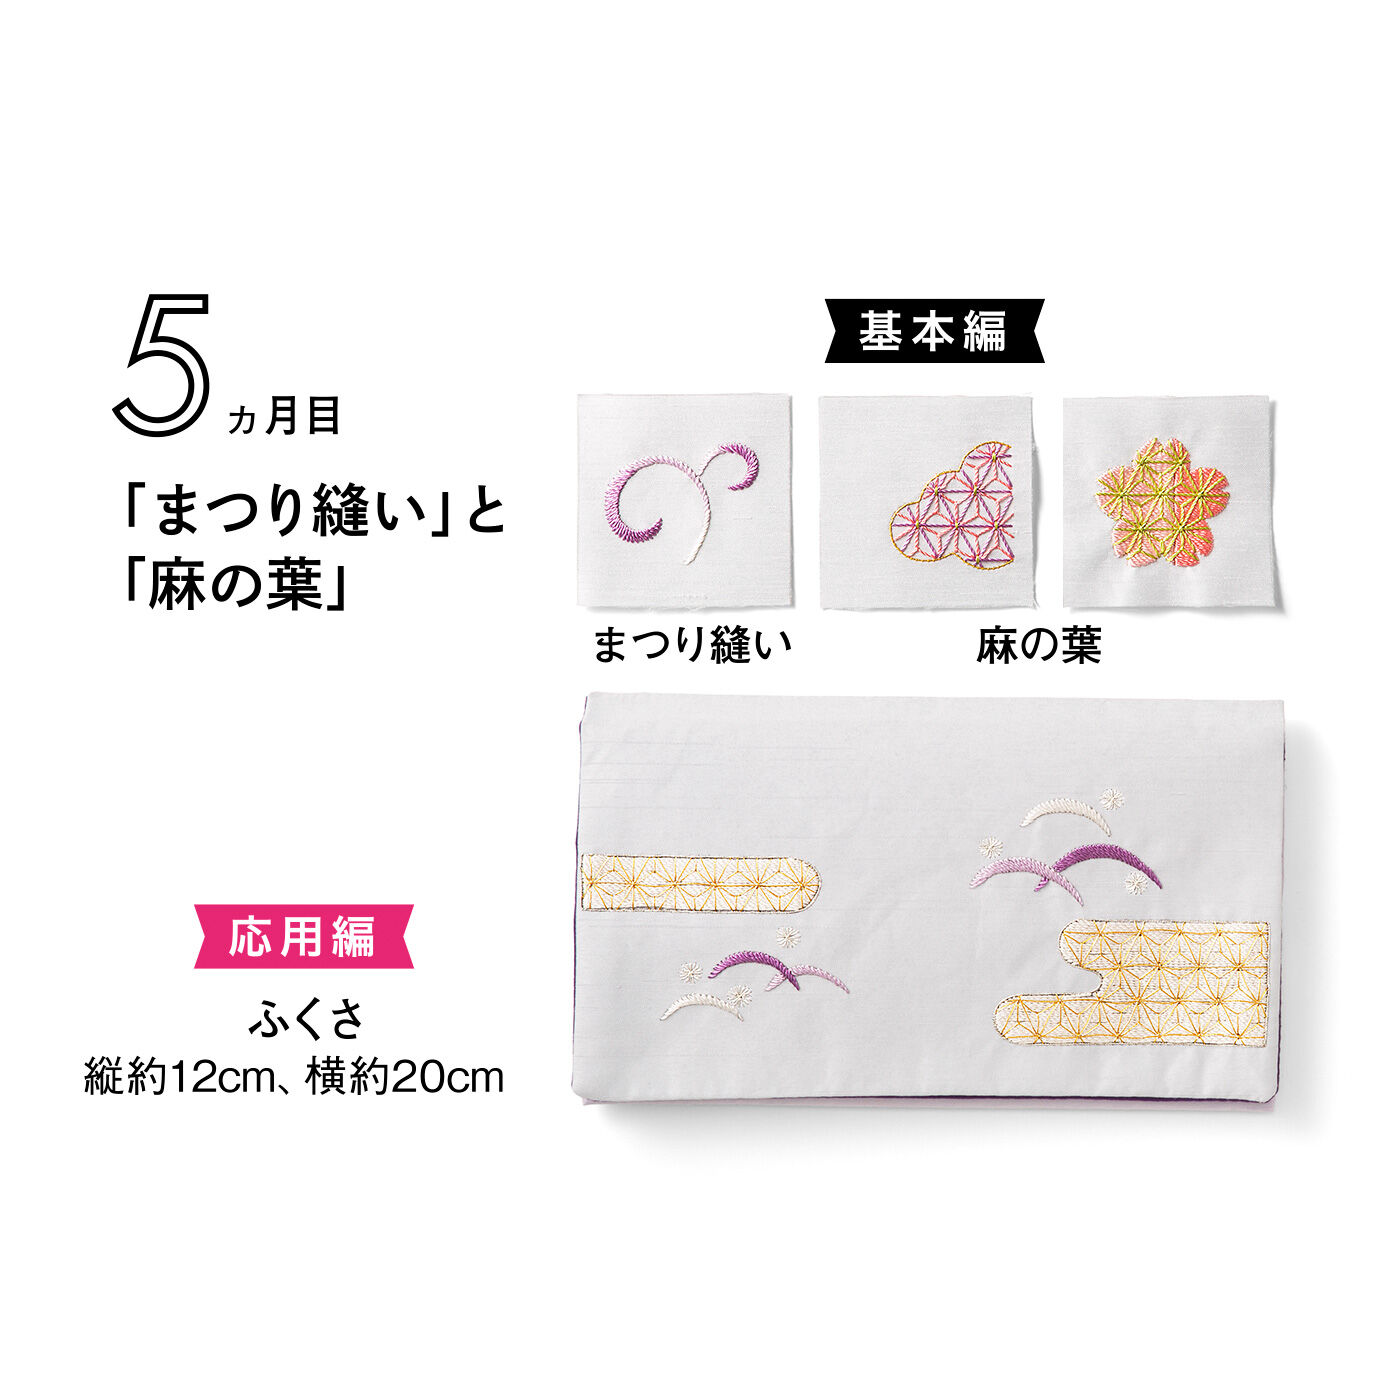 クチュリエ|日本の美を学ぶ「はじめてさんのきほんのき」日本刺しゅうレッスン|タイプ6　※このデザインには日本刺しゅう針は入っていません